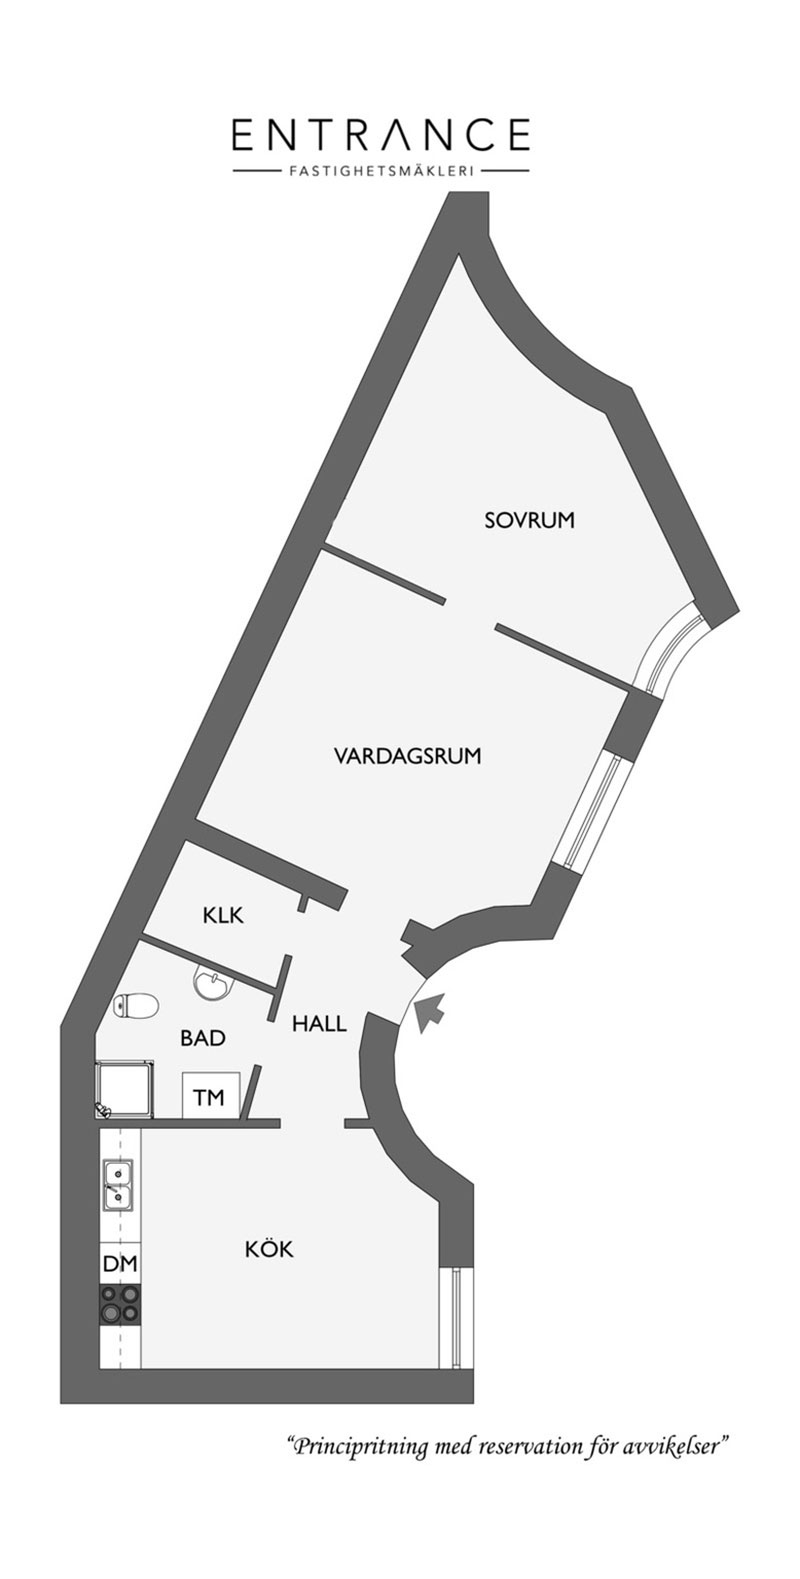 Скандинавская квартира с темными обоями и сложной планировкой (62 кв. м)